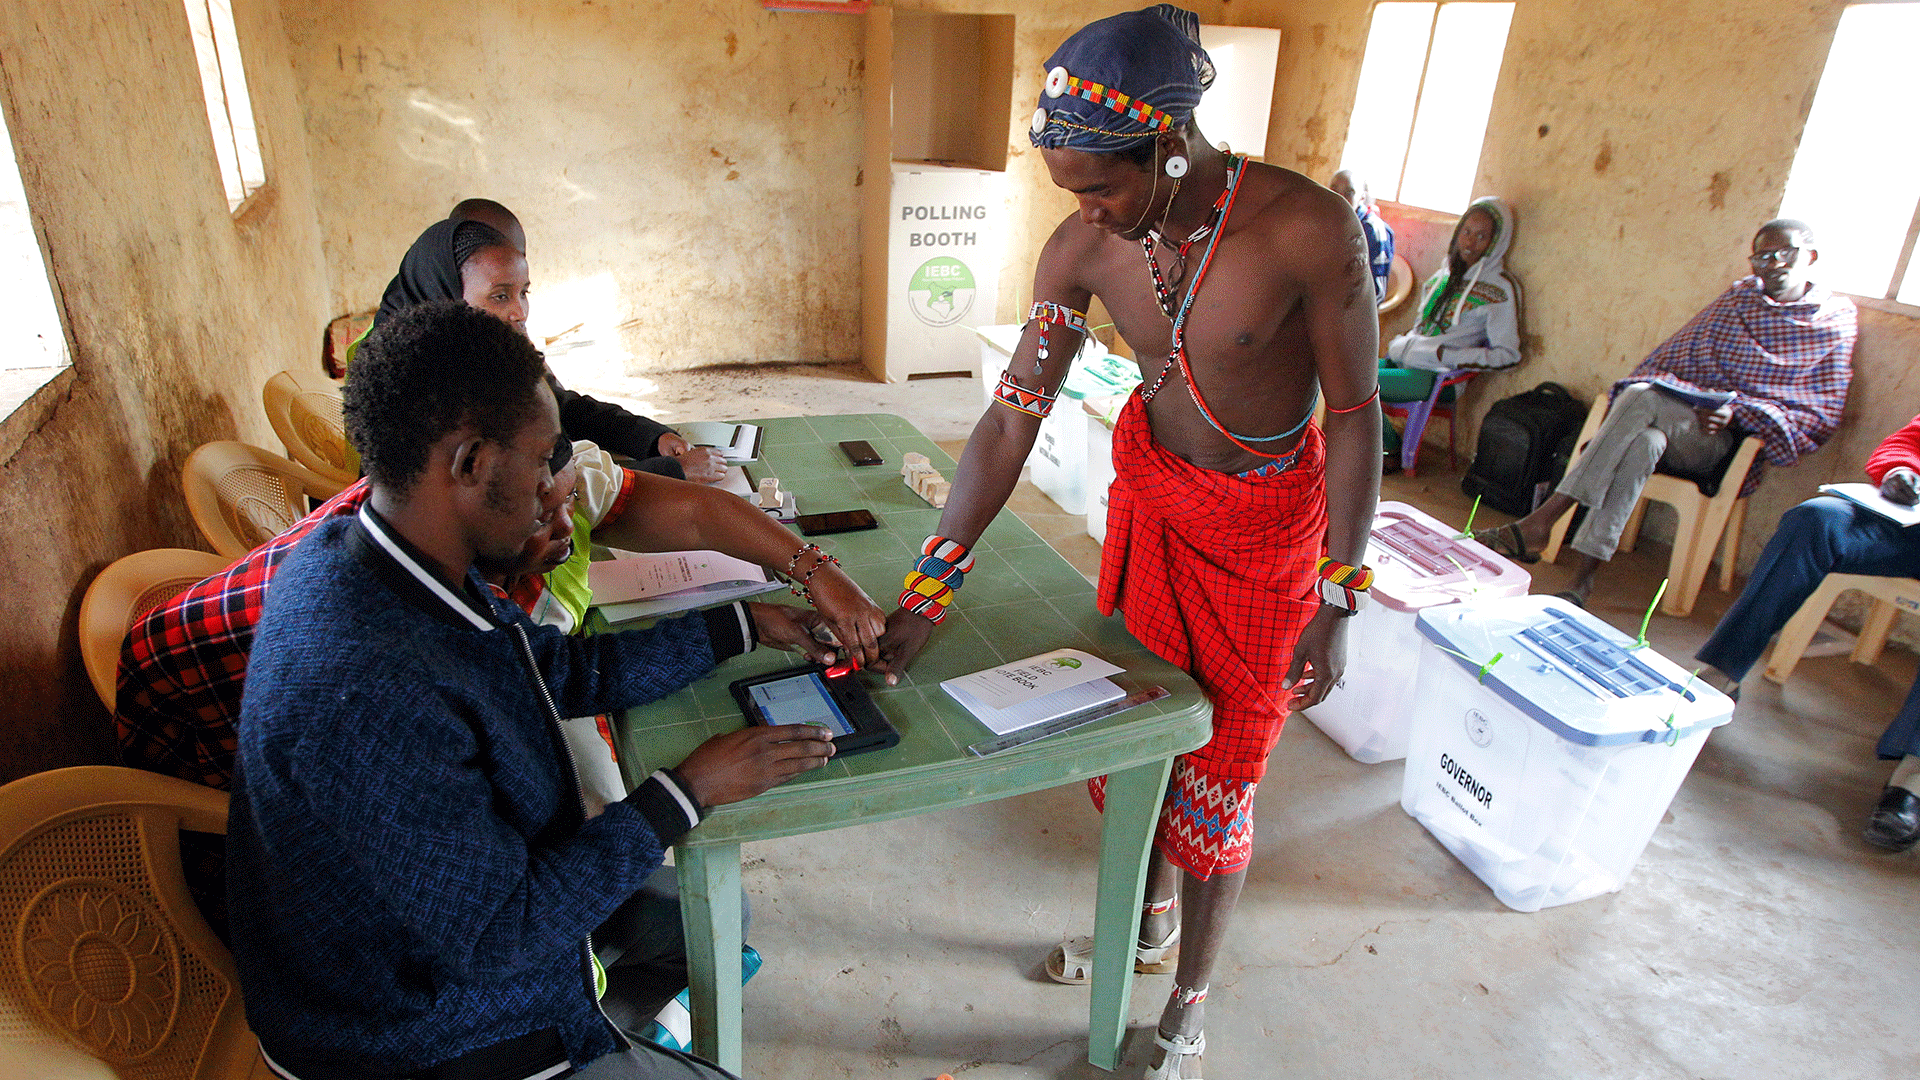 Kenia comienza a votar en unas reñidas y tensas elecciones